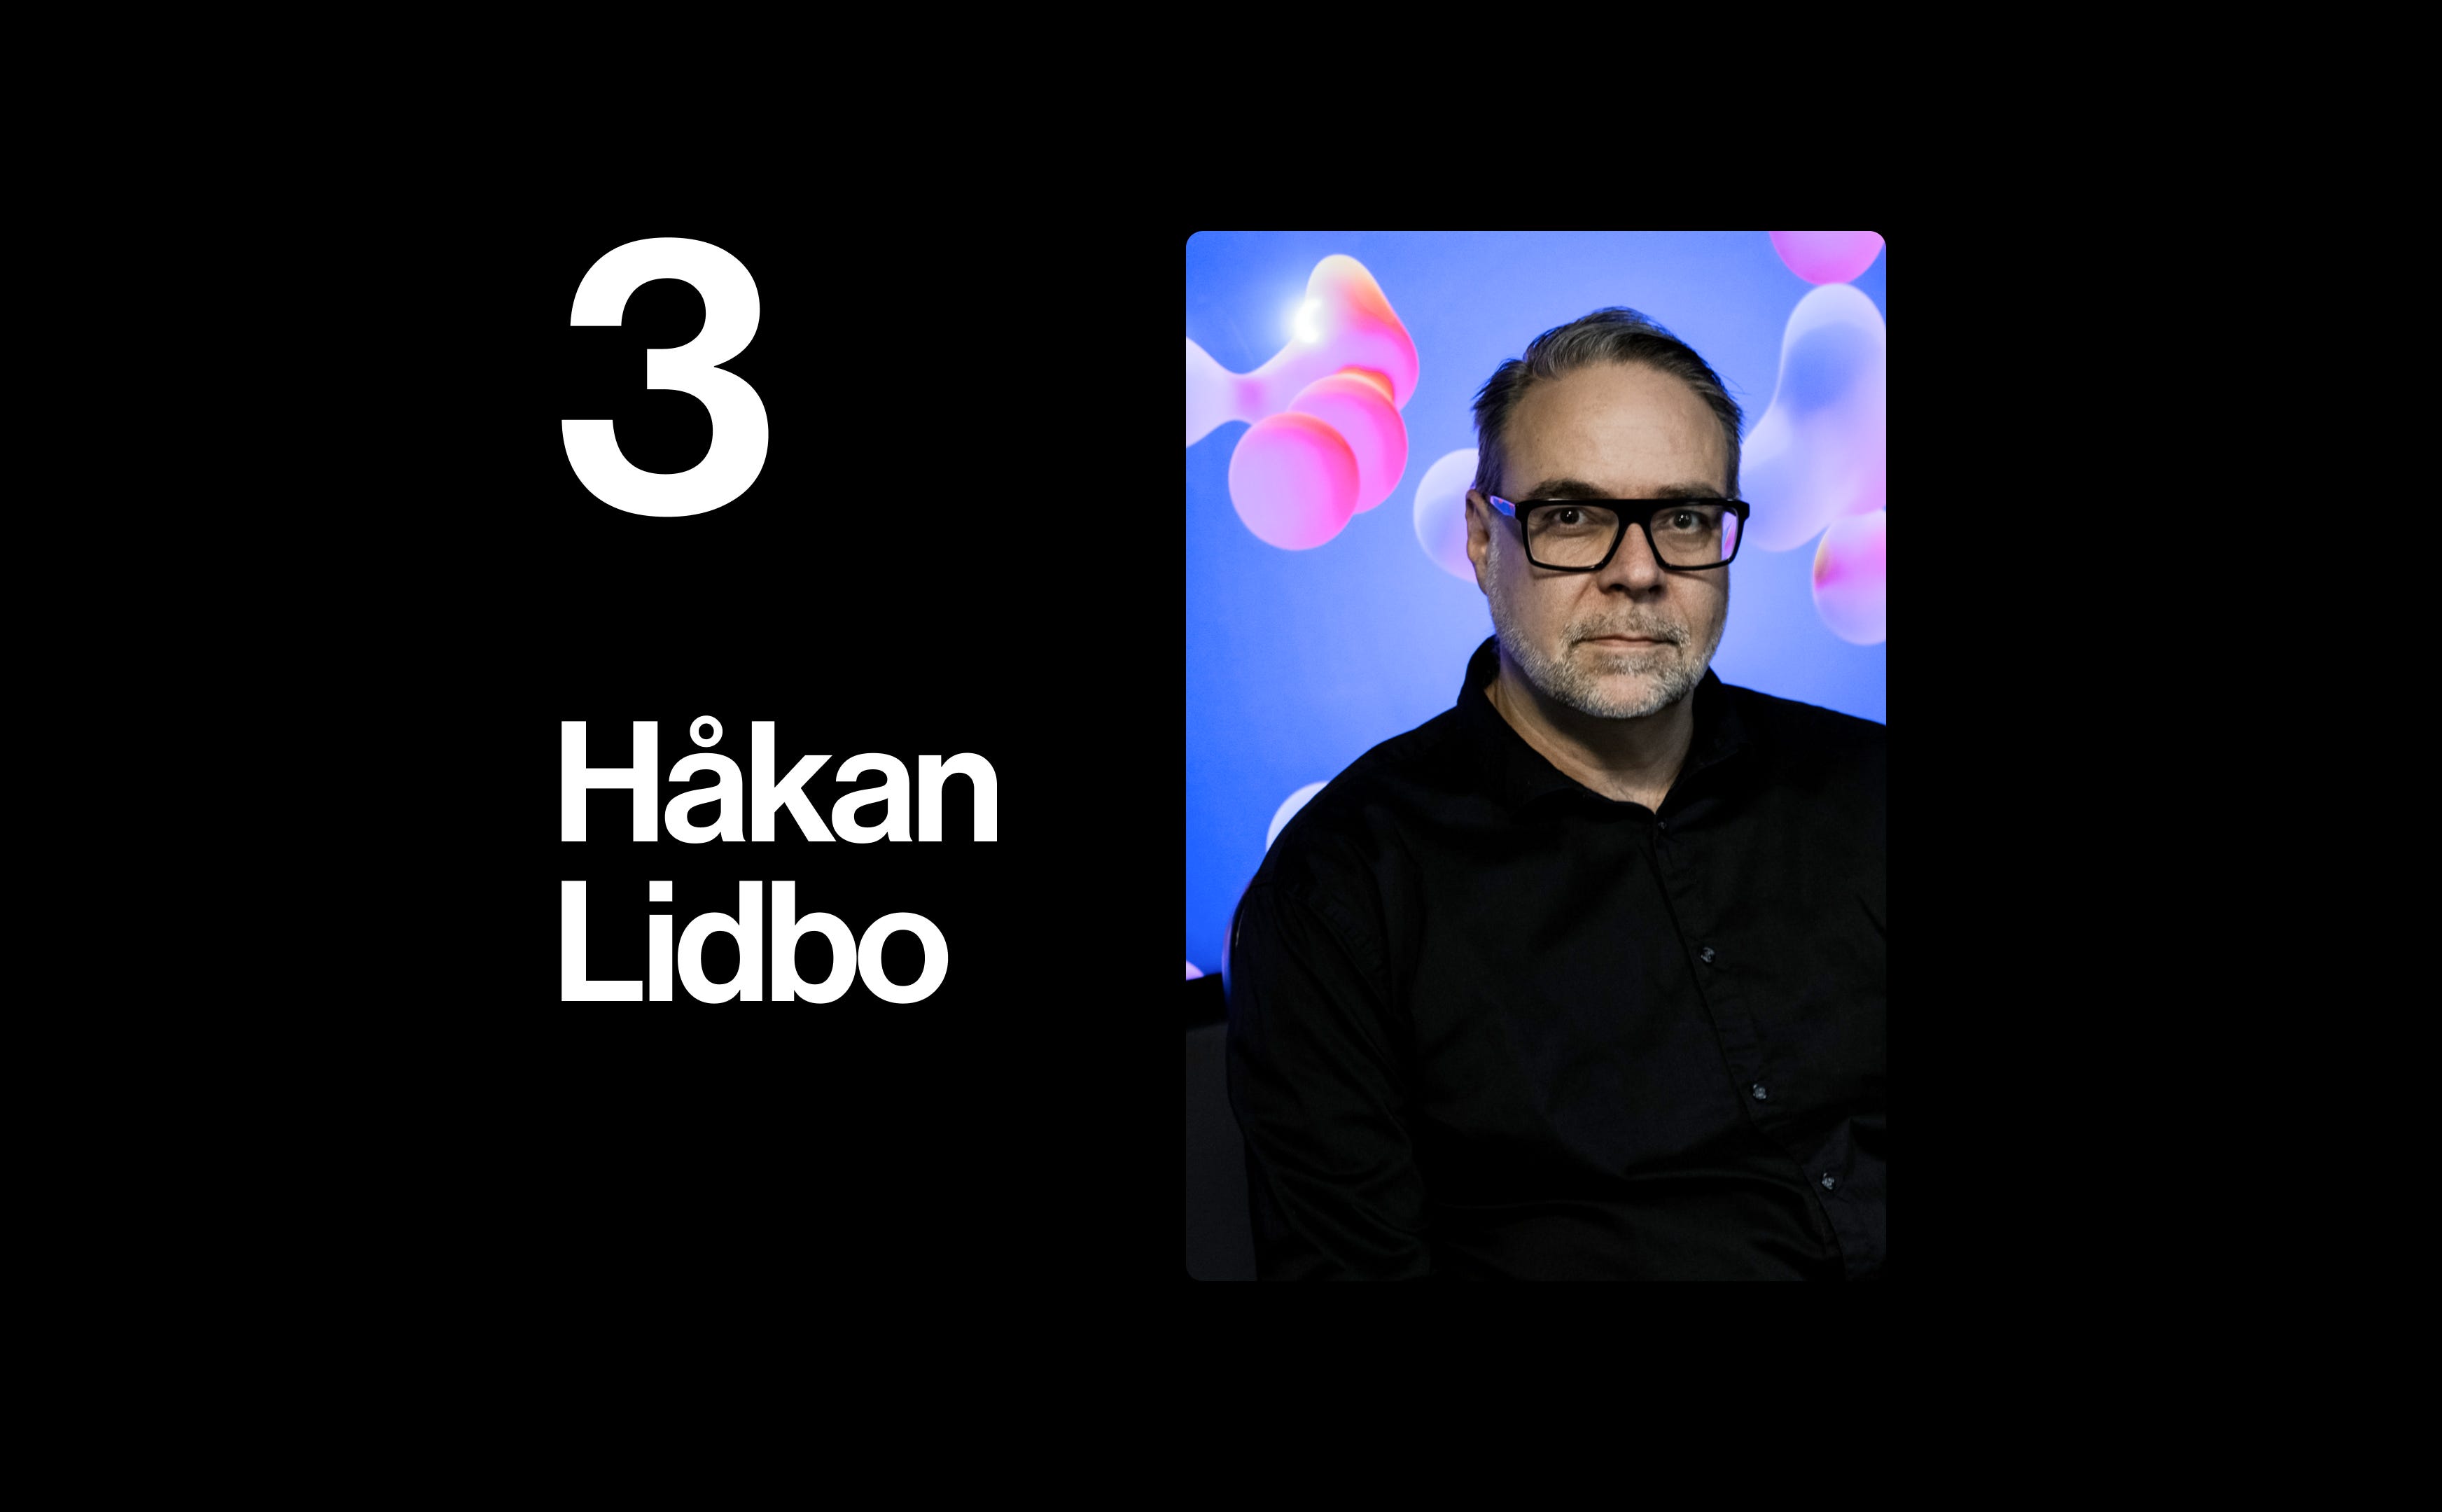 Håkan Lidbo: Musician, Artist, Innovator